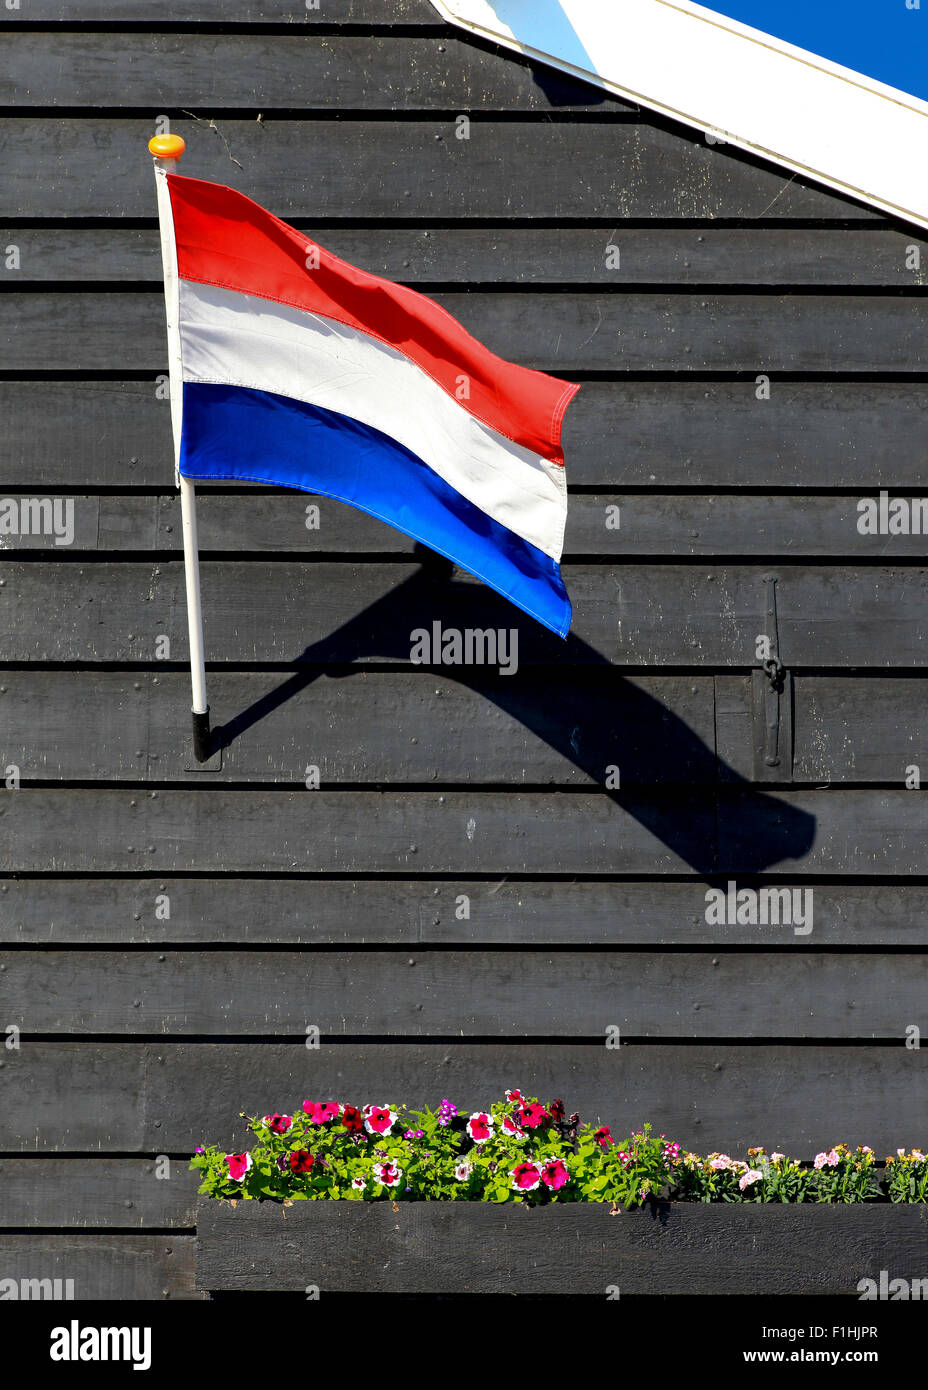 Drapeau national néerlandais de fleurs accroché sur bois foncé Banque D'Images